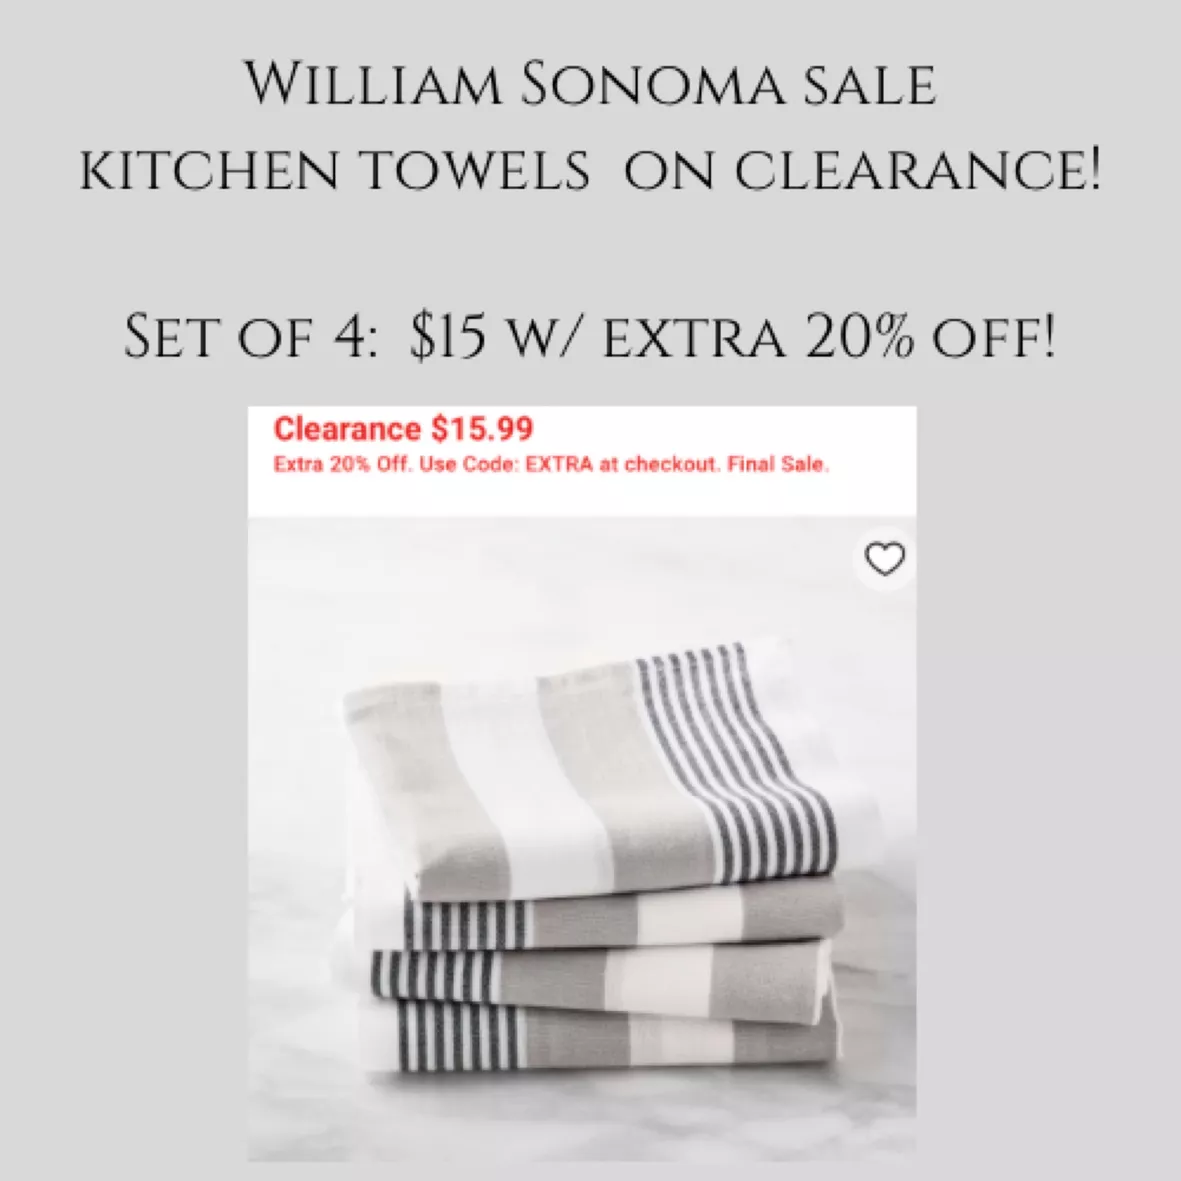 Williams Sonoma Classic Striped Dish Cloths